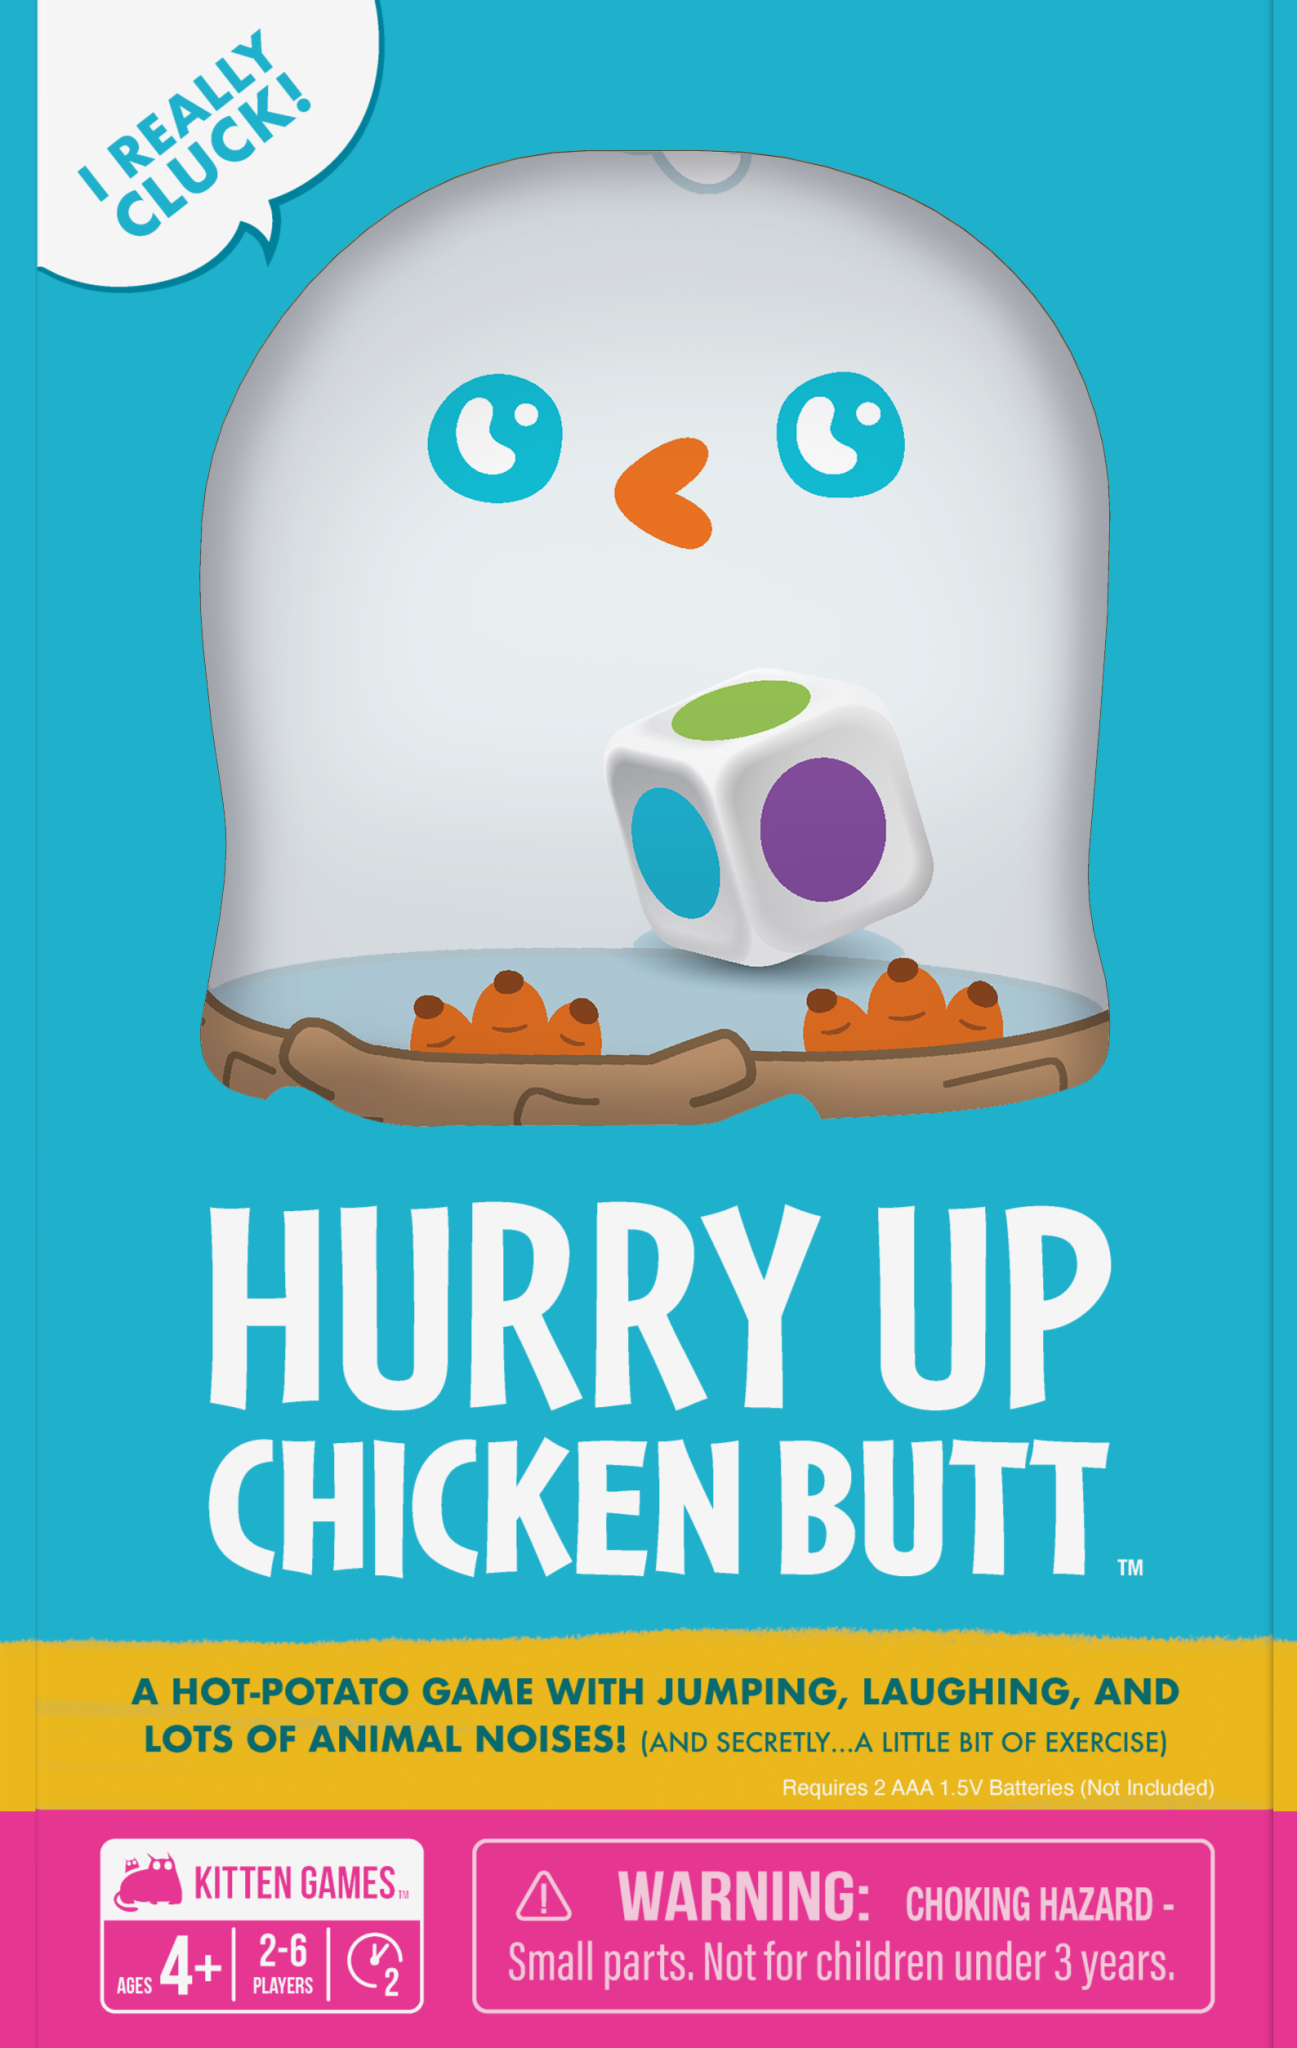 Hurry Up Chicken Butt